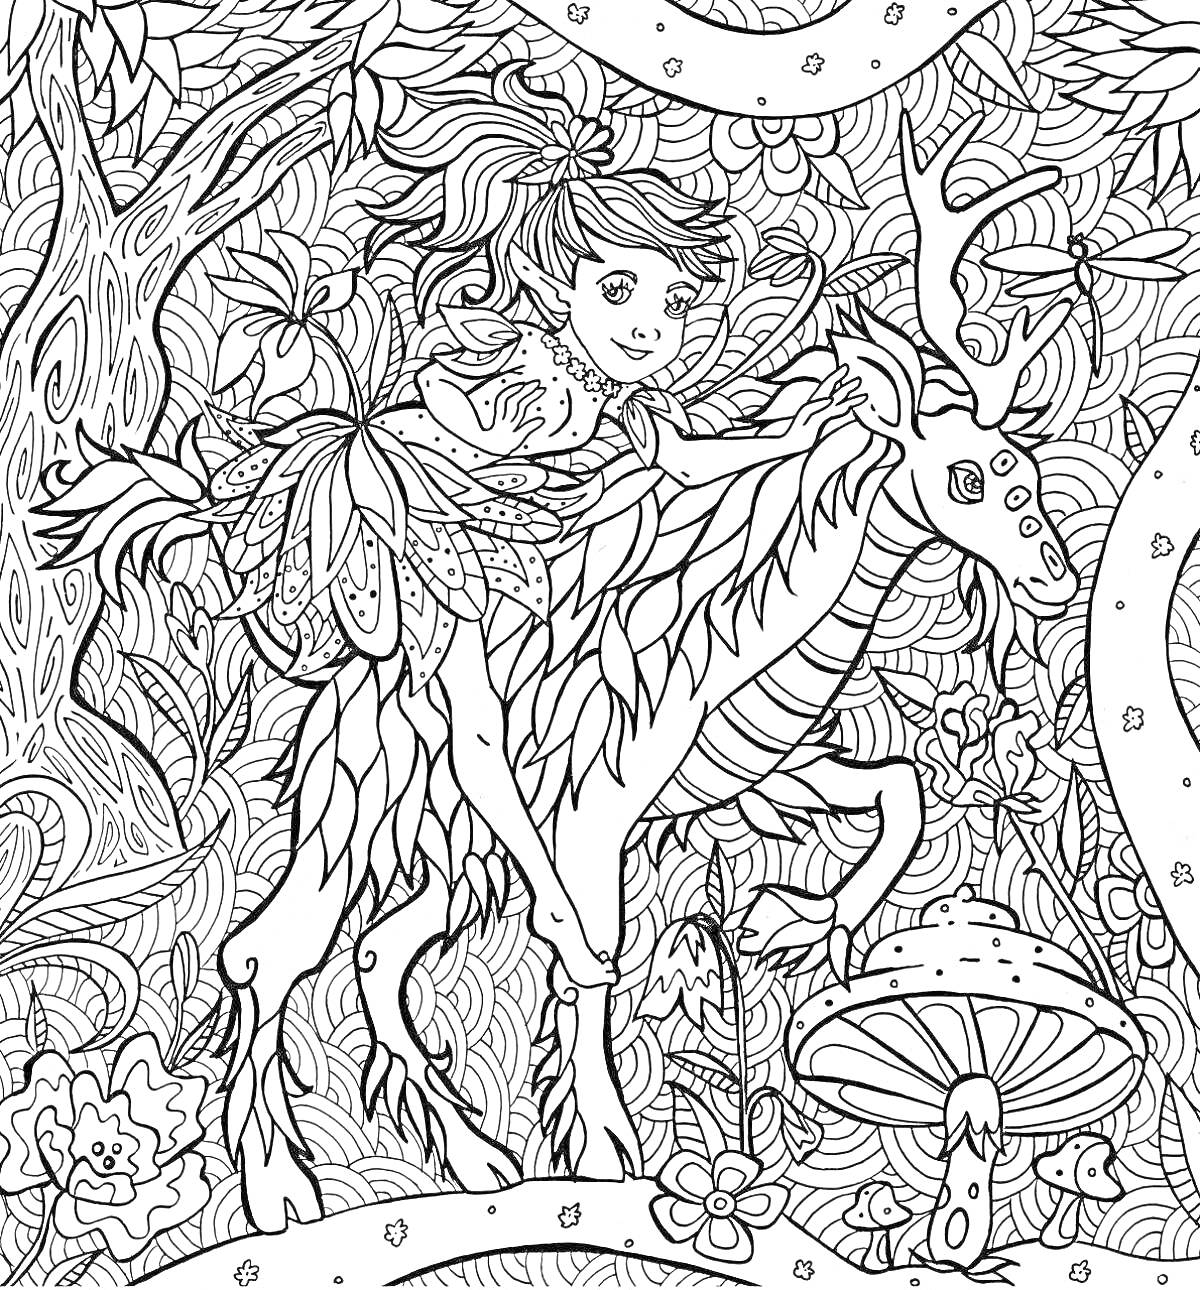 Раскраска Девочка верхом на олене в волшебном лесу с грибами и цветами